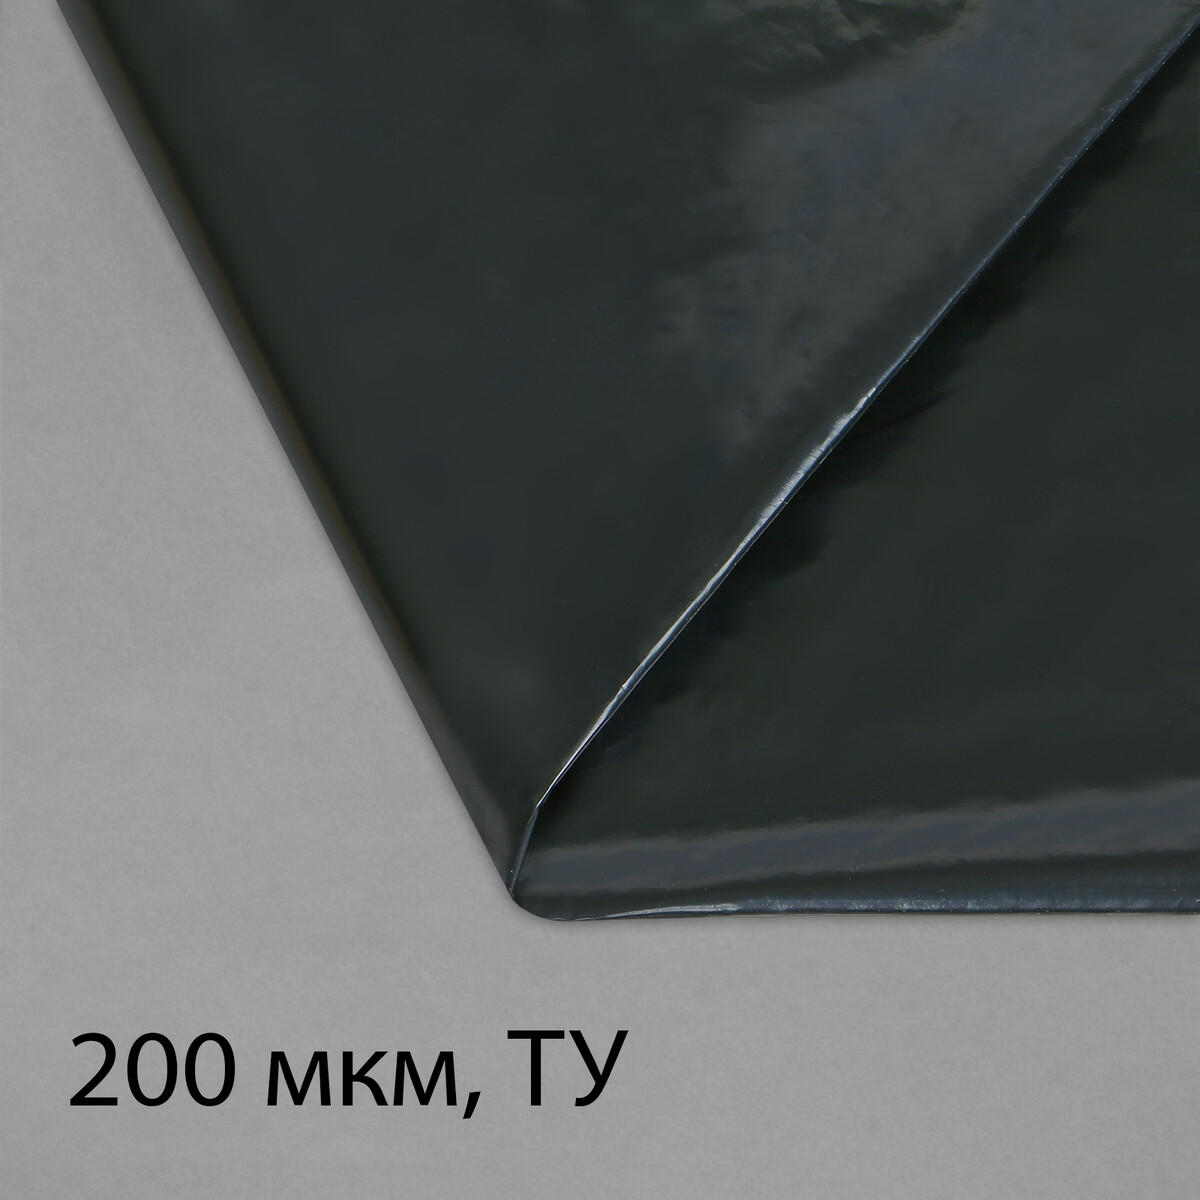 Пленка полиэтиленовая, техническая, толщина 200 мкм, 5 × 3 м, рукав (1,5 м × 2), черная, 2 сорт, эконом 50 % пленка полиэтиленовая толщина 200 мкм прозрачная 5 × 3 м рукав 1 5 м × 2 эконом 50%